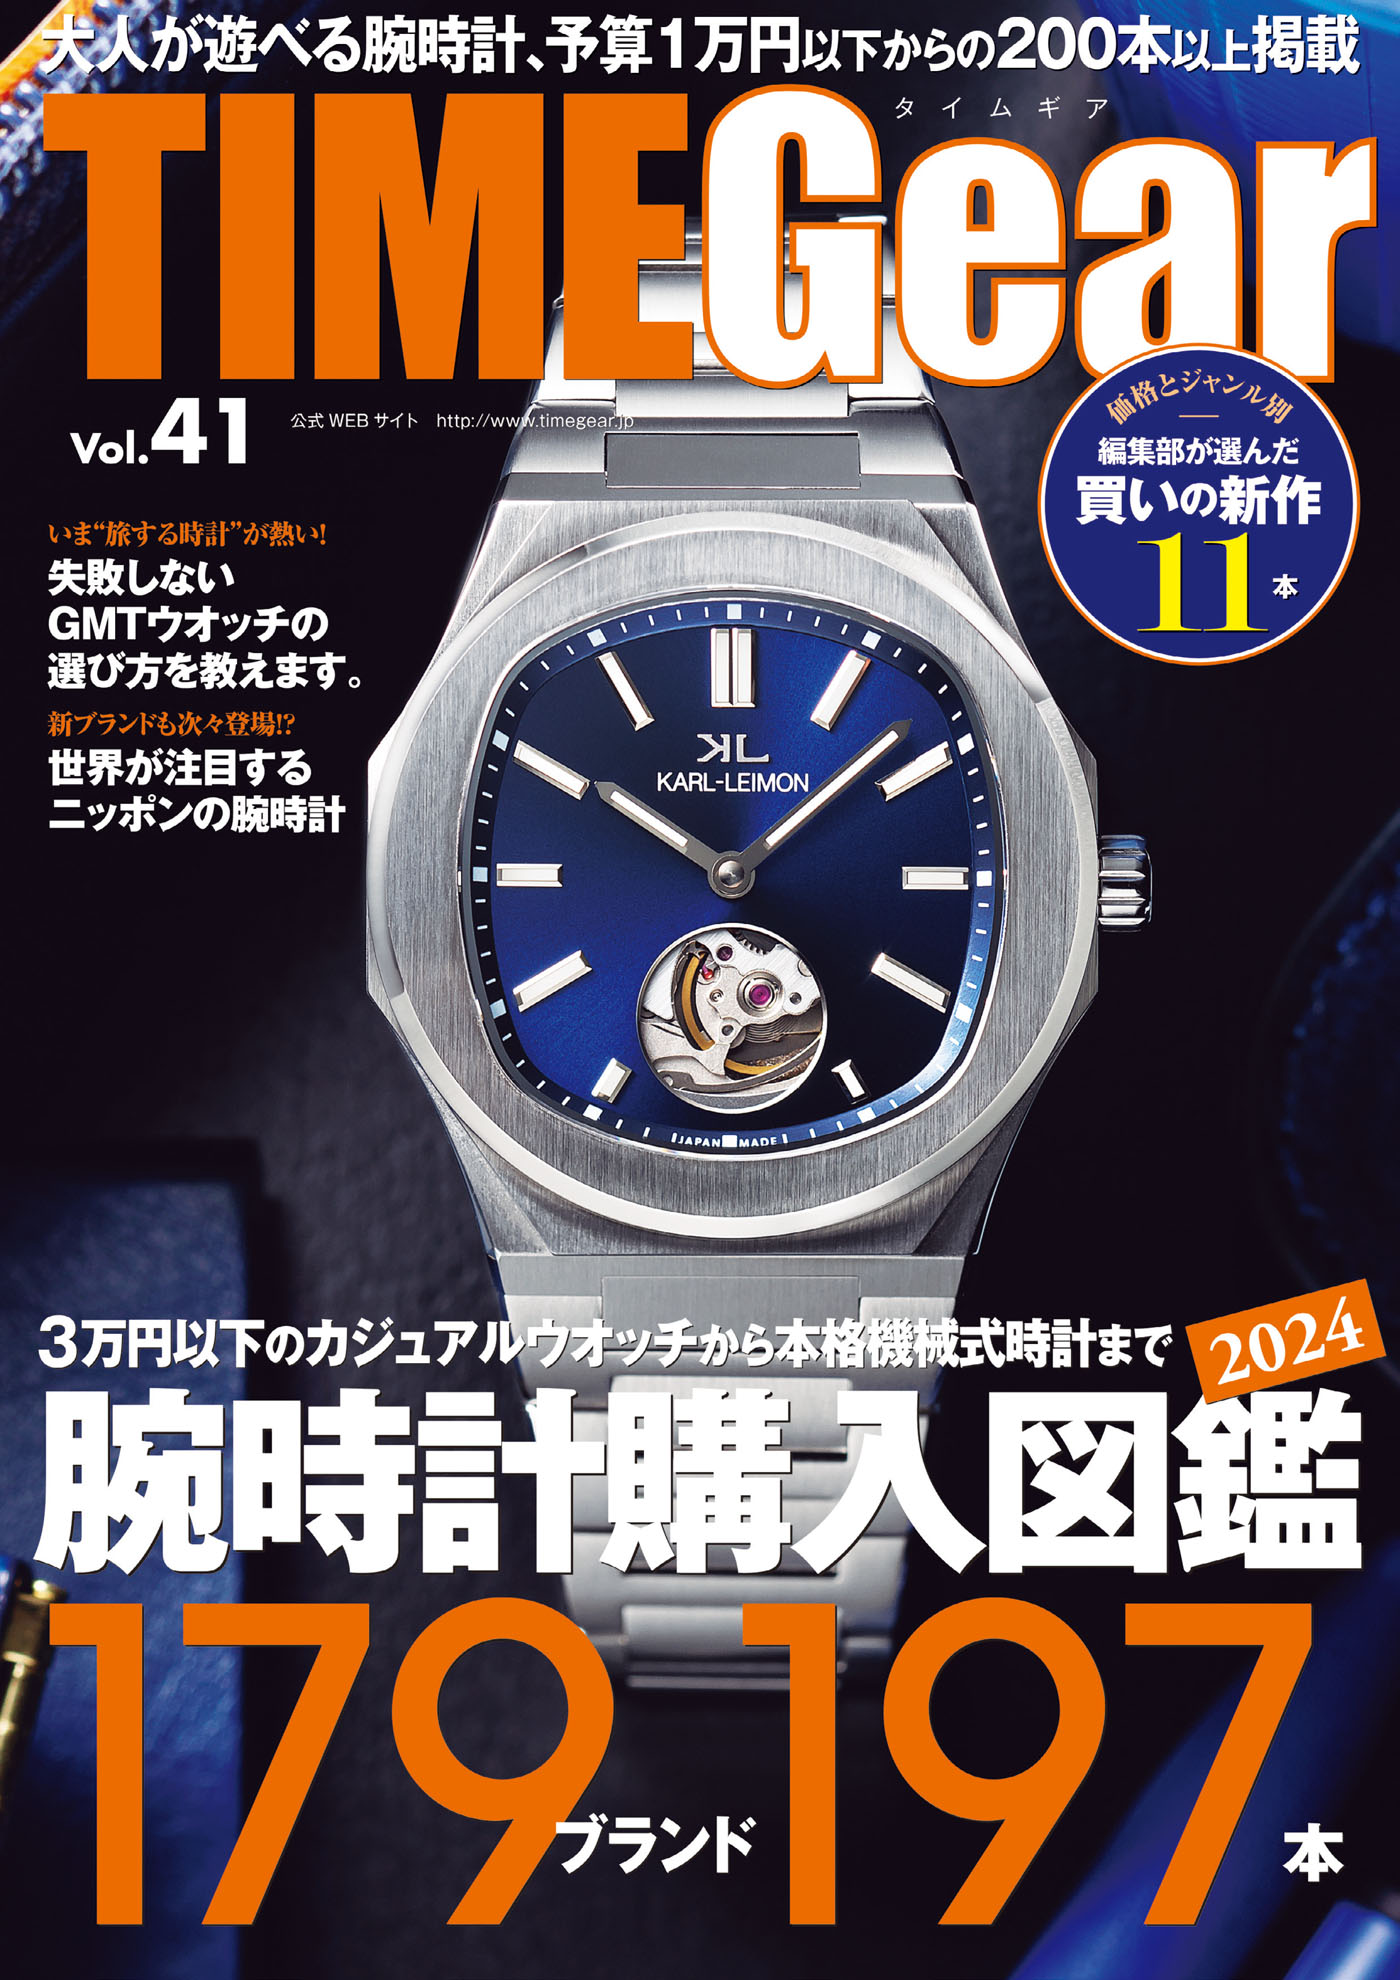 奇跡の3万円台✨リーフタイガー メンズ腕時計 - ラバーベルト